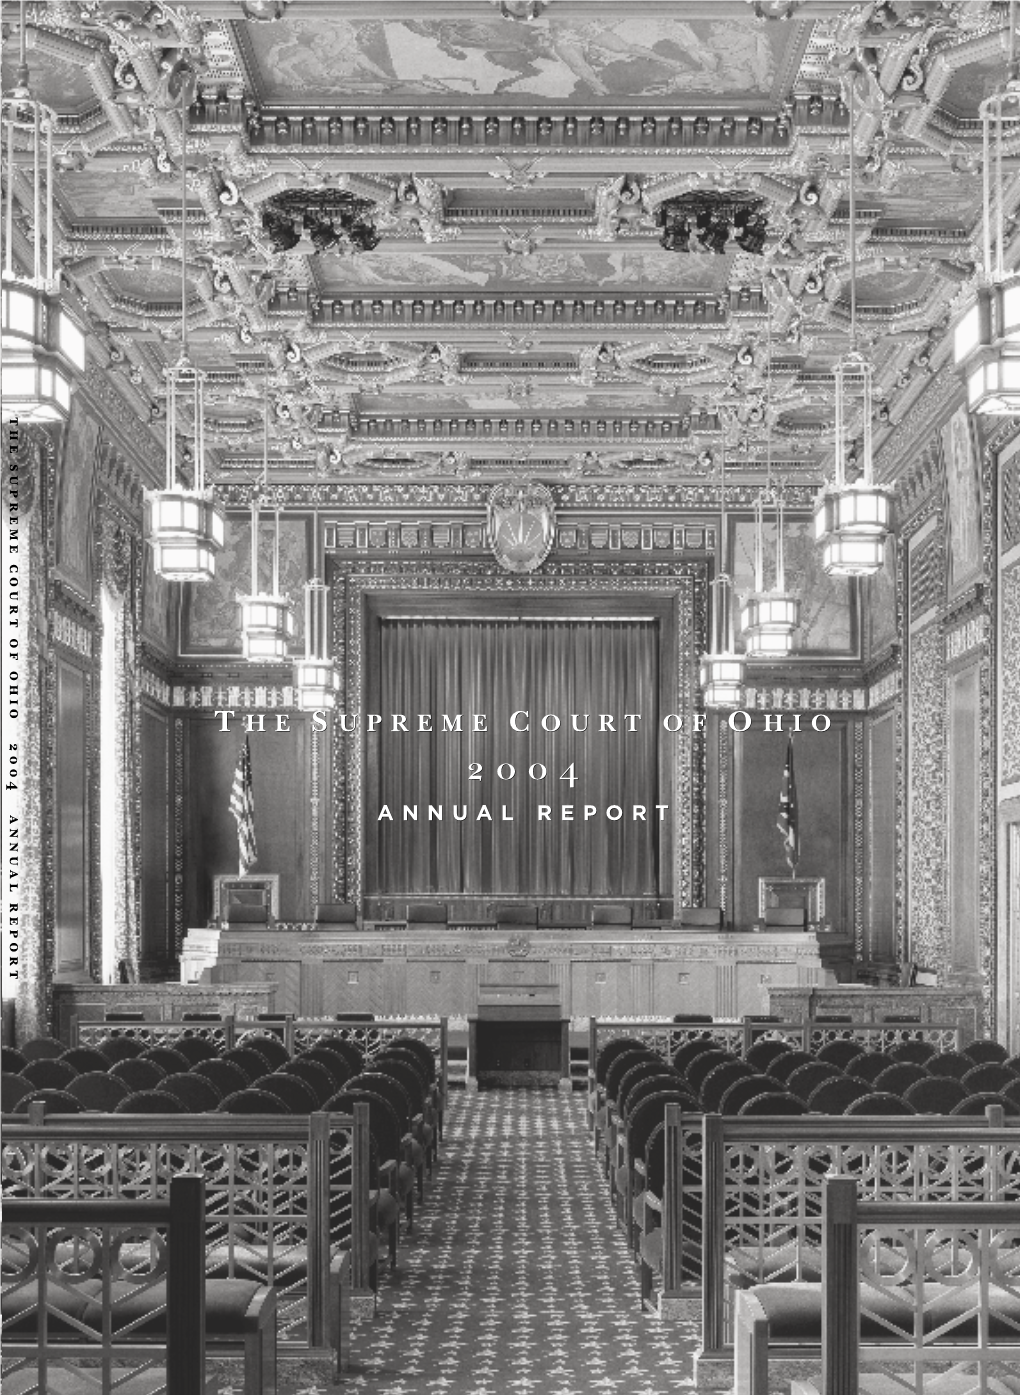 Supreme Court of Ohio 2004 Annual Report